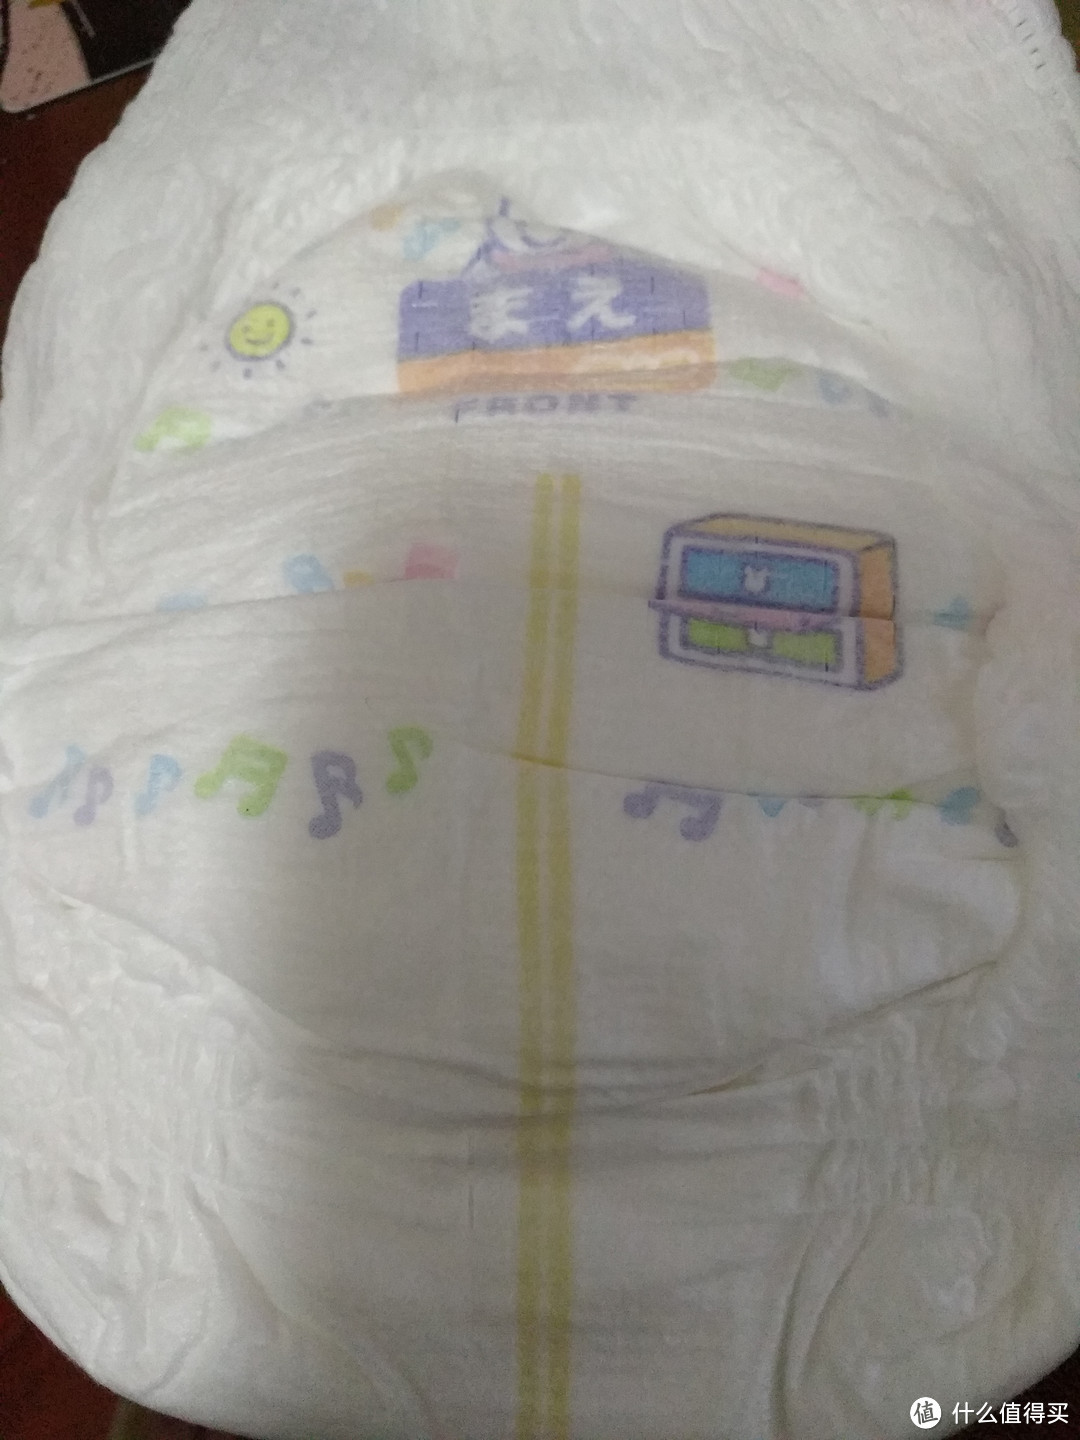 #原创新人#  京东自营、天猫国际自营、天猫超市三个的花王纸尿裤晒单第一篇。